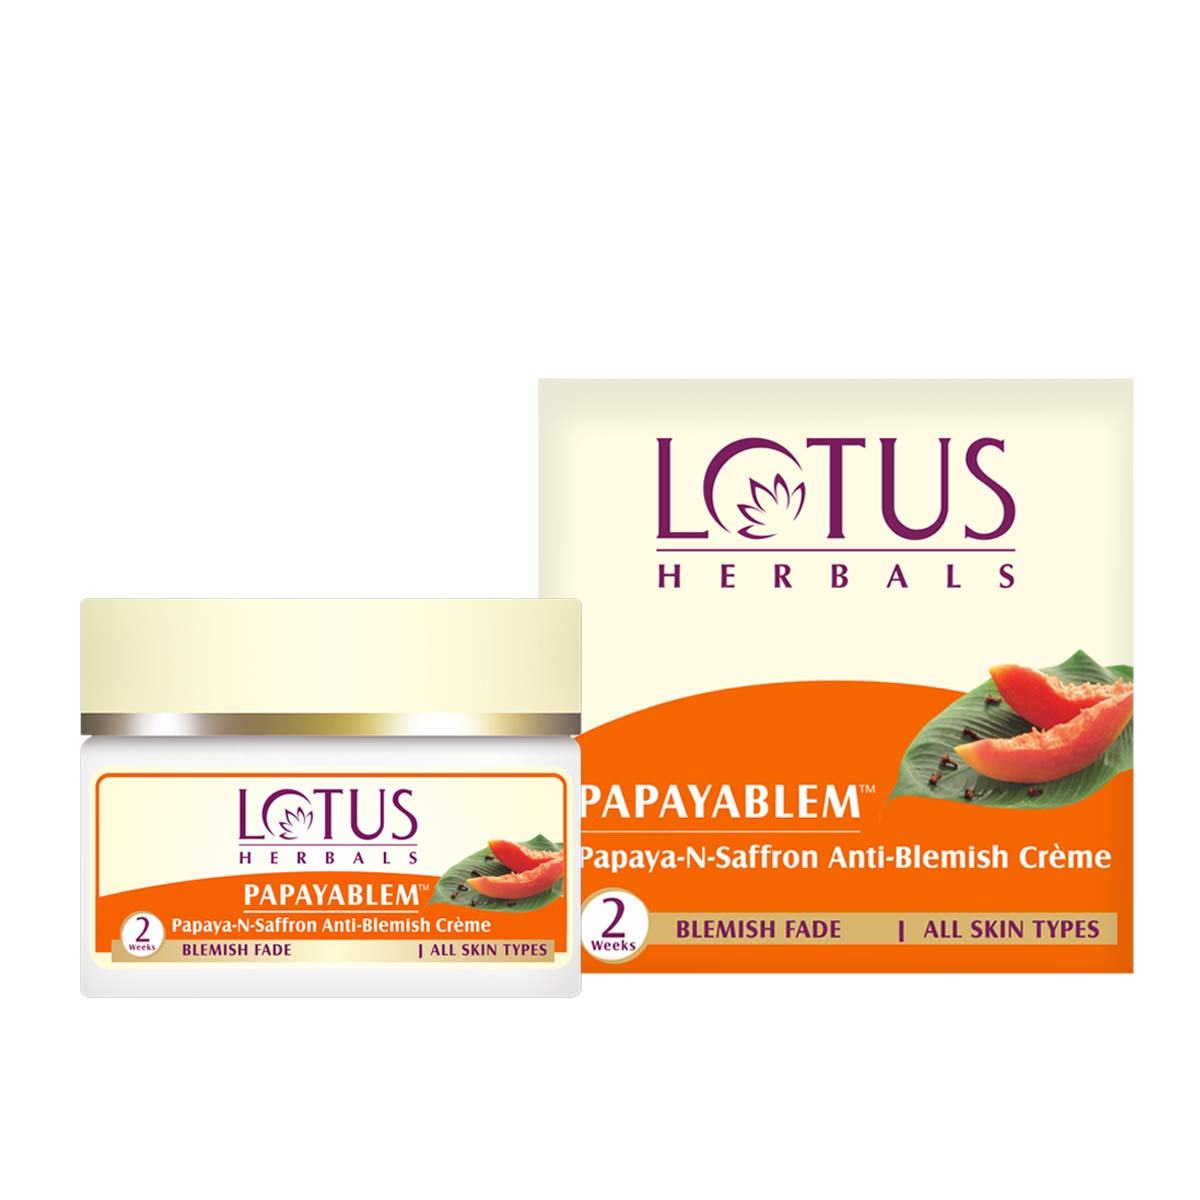 Lotus Herbals Papayablem Papaya-N-Saffron Anti-Blemish Cream (50 g) Lotus Herbals